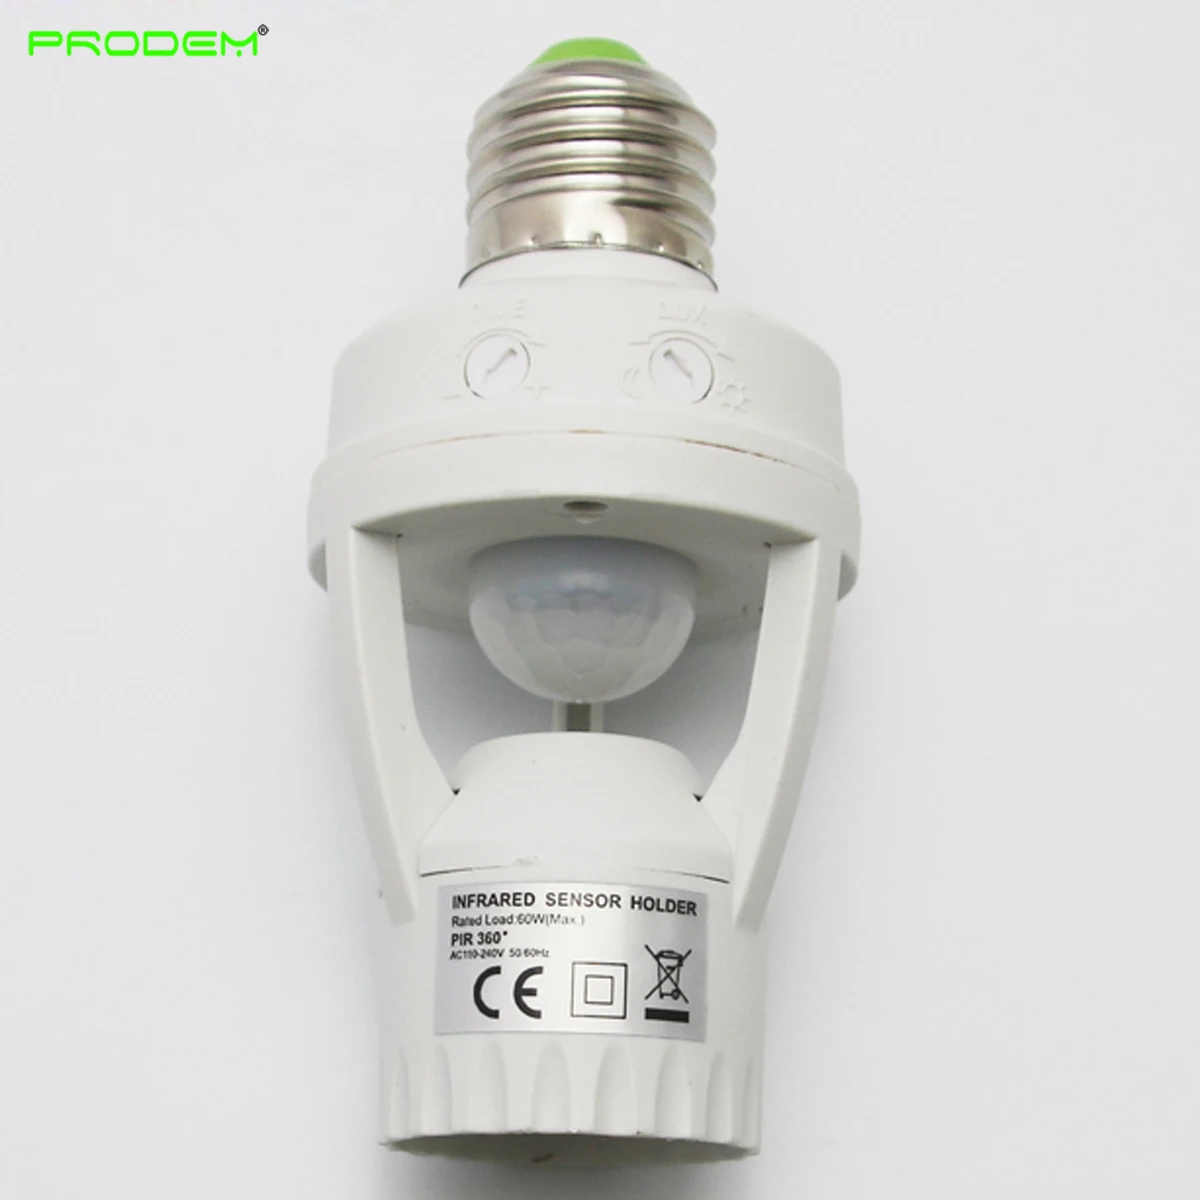 Easy Install PIR Motion Sensor Holder Infrared Lamp Fixture Base Socket E27 Screw 5 Year Warranty 110-240V